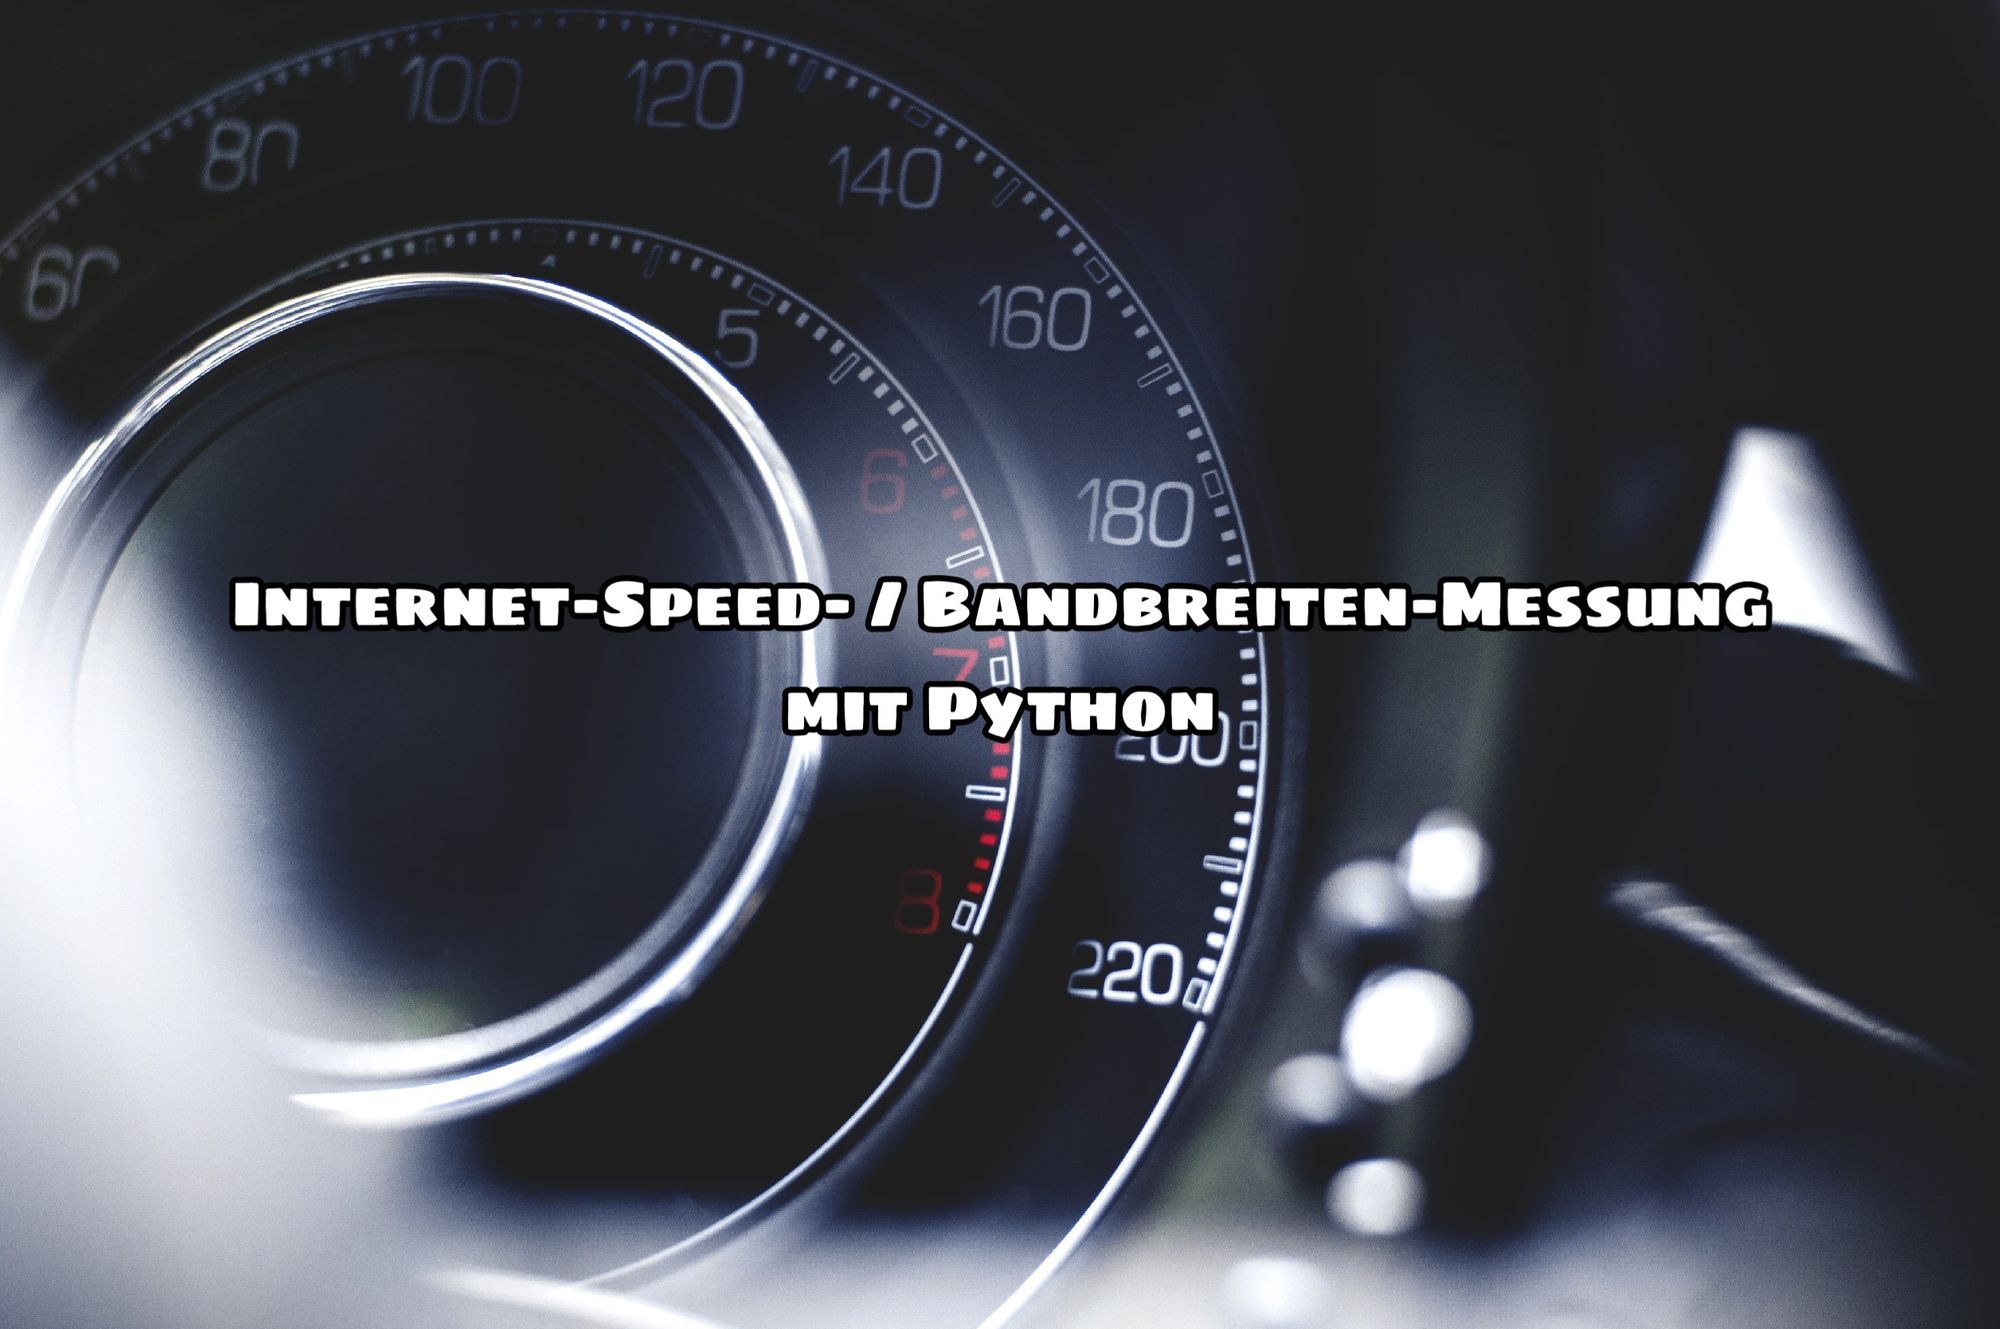 Internet-Speed- / Bandbreiten-Messung mit Python